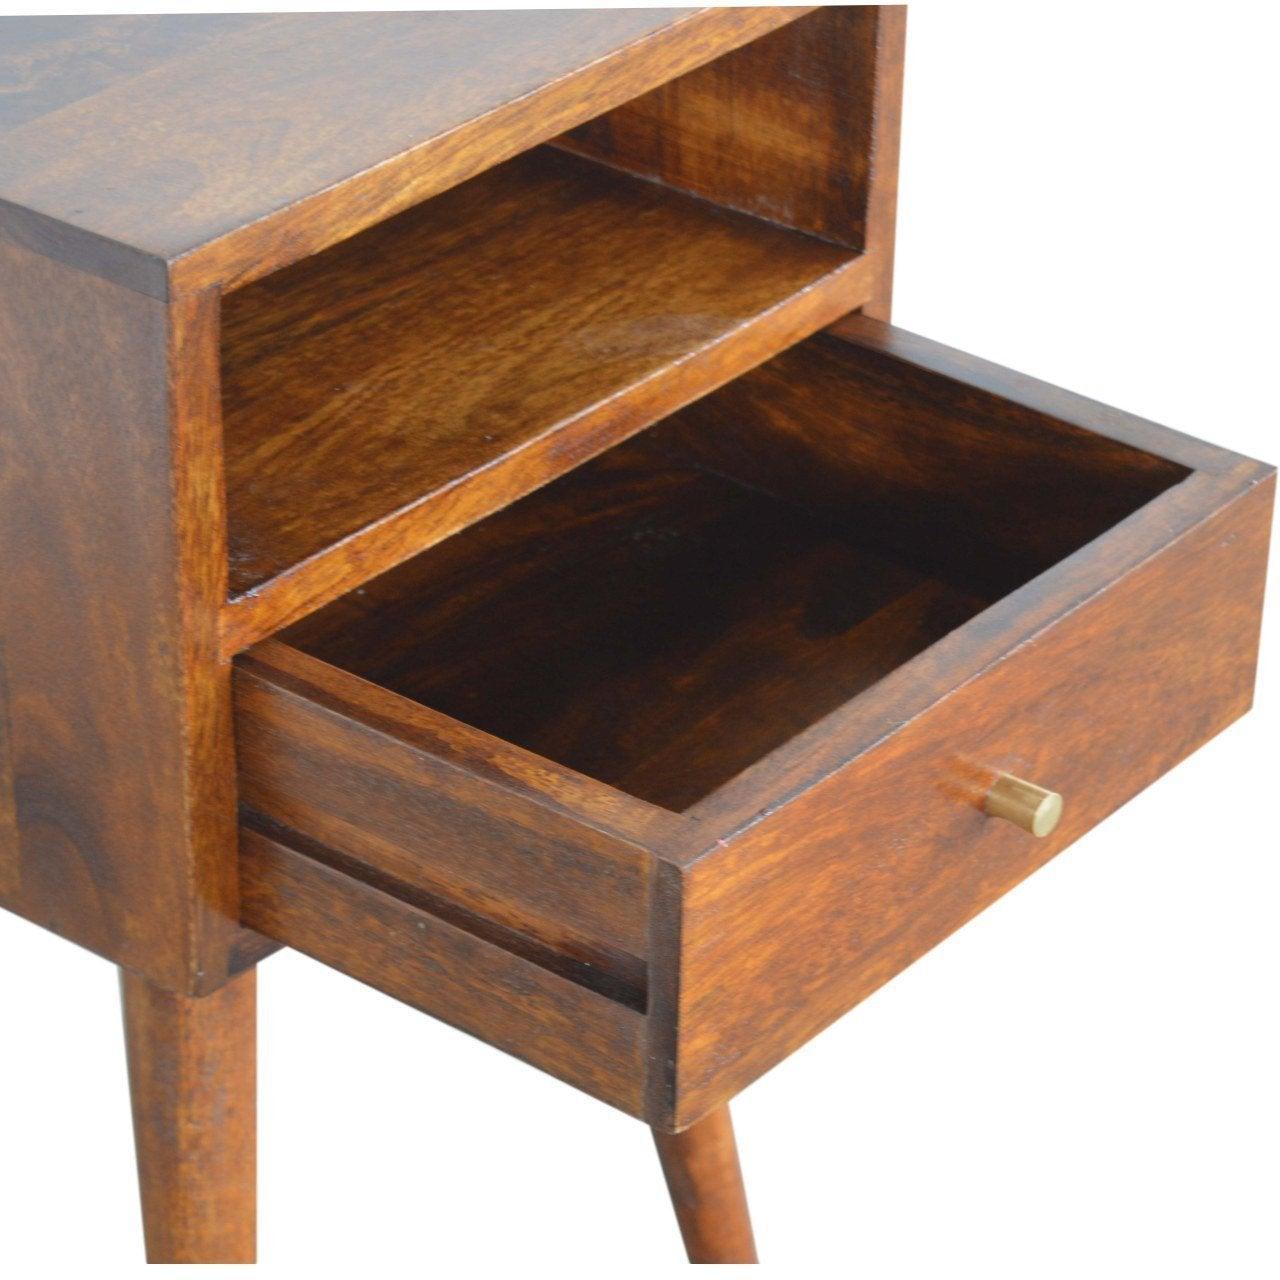 Petite chestnut finish bedside table - crimblefest furniture - image 6